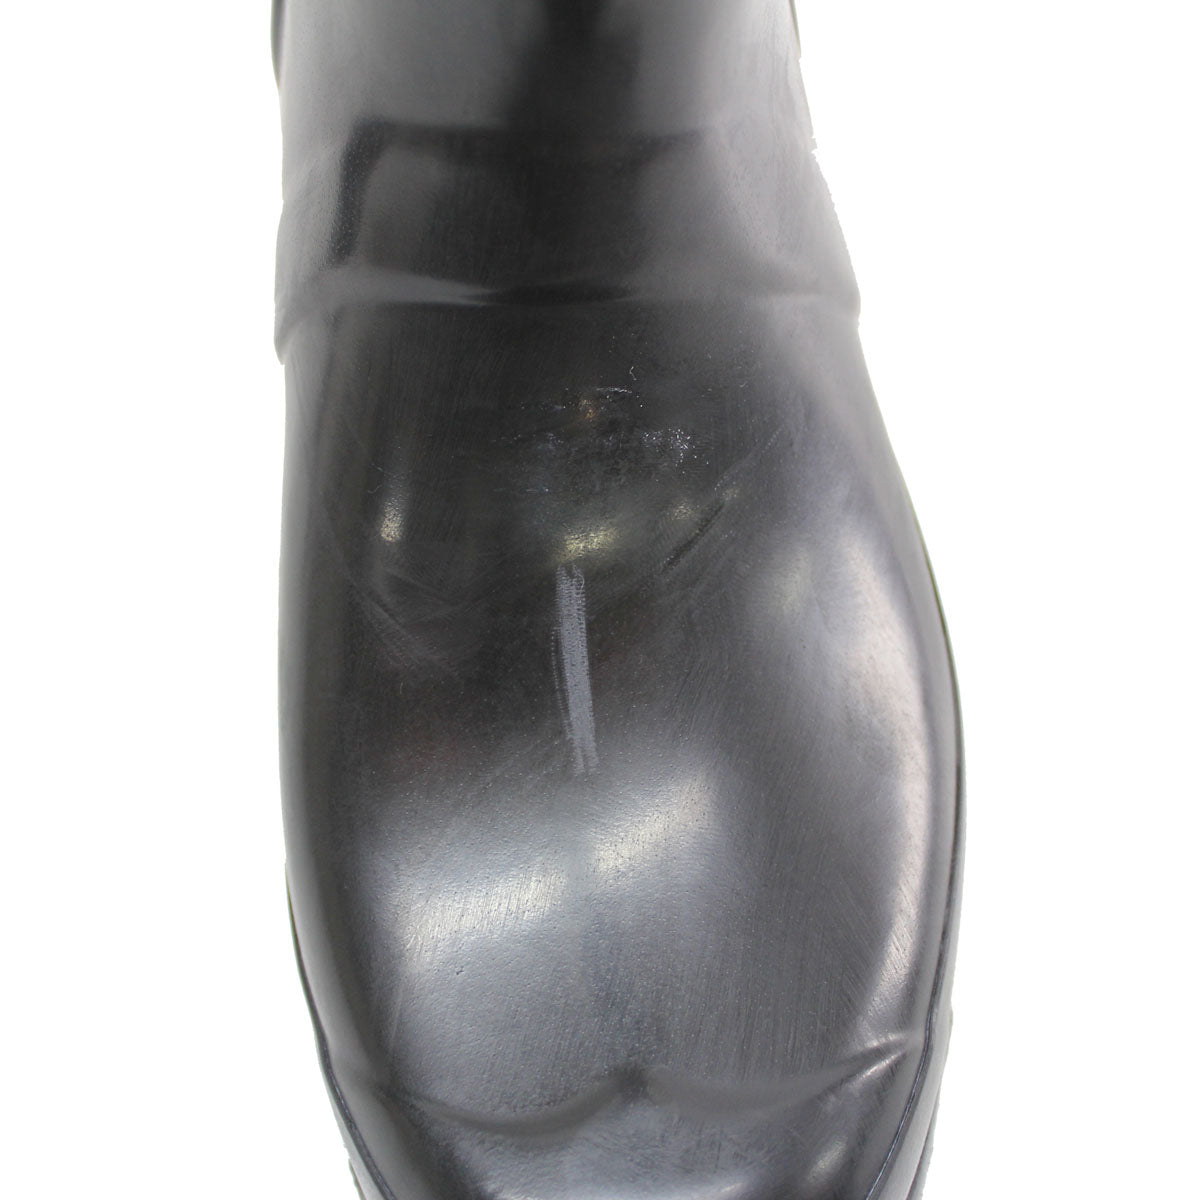 Hunter Womens Original Tall Gloss Rubber Boots - UK 7